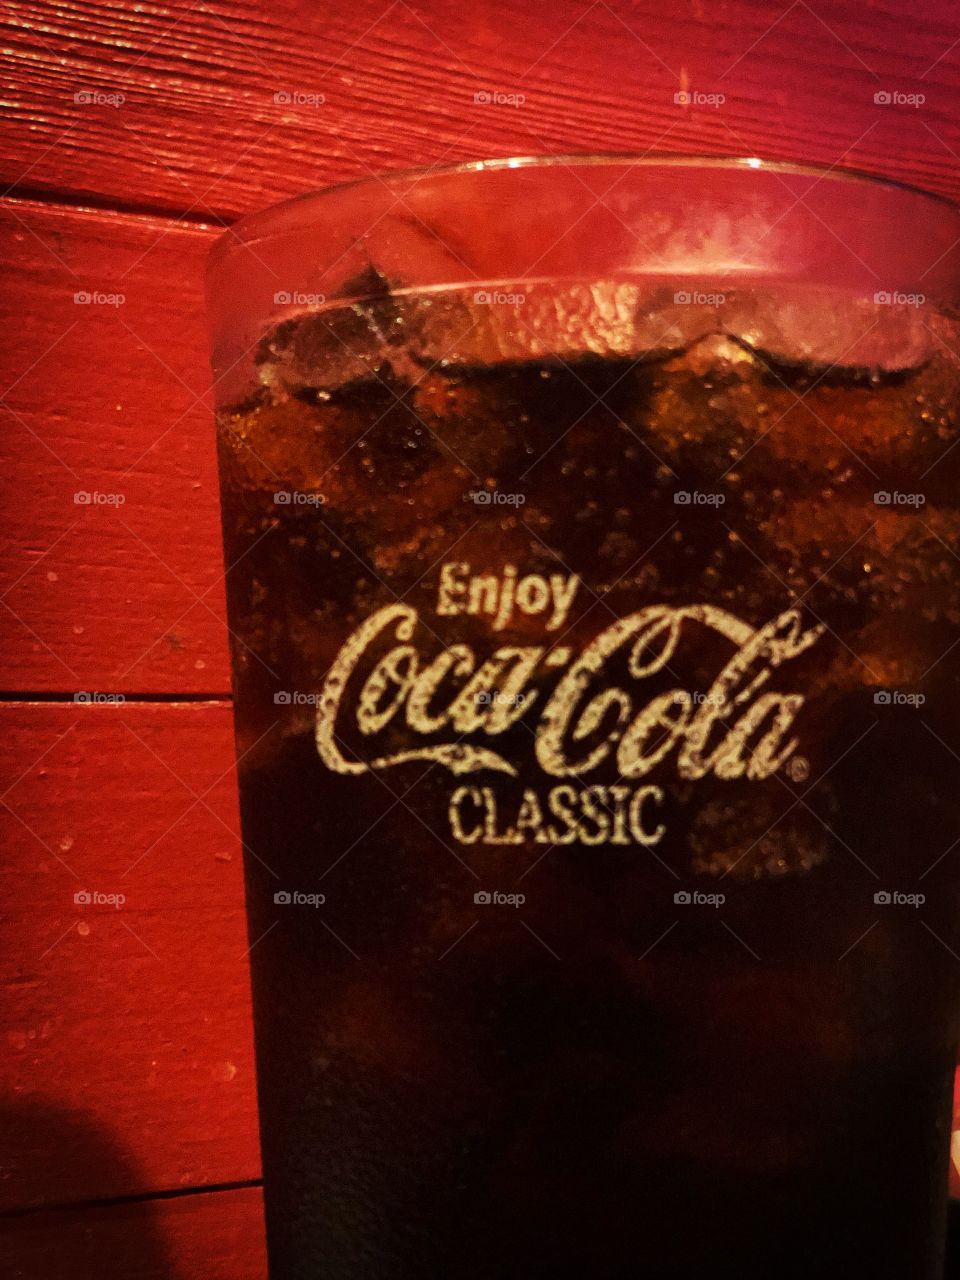 Enjoy Coca-Cola Classic